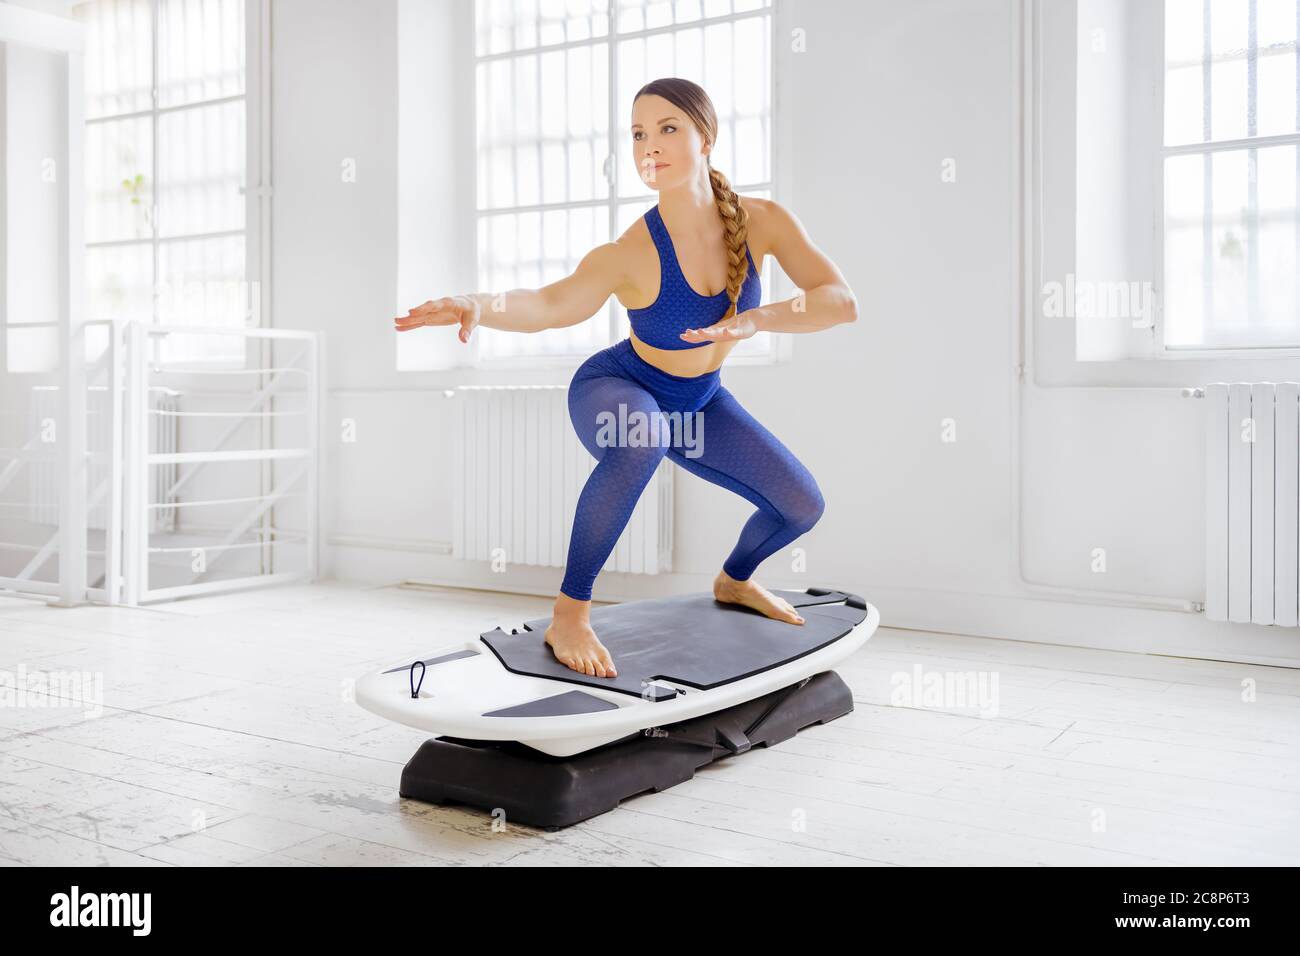 Junge Frau macht ein Surfset regelmäßige Surfer Pose während ihres Fitness-Workout in einem High-Key-Fitnessstudio mit Copyspace in einem gesunden Lifestyle-Konzept Stockfoto